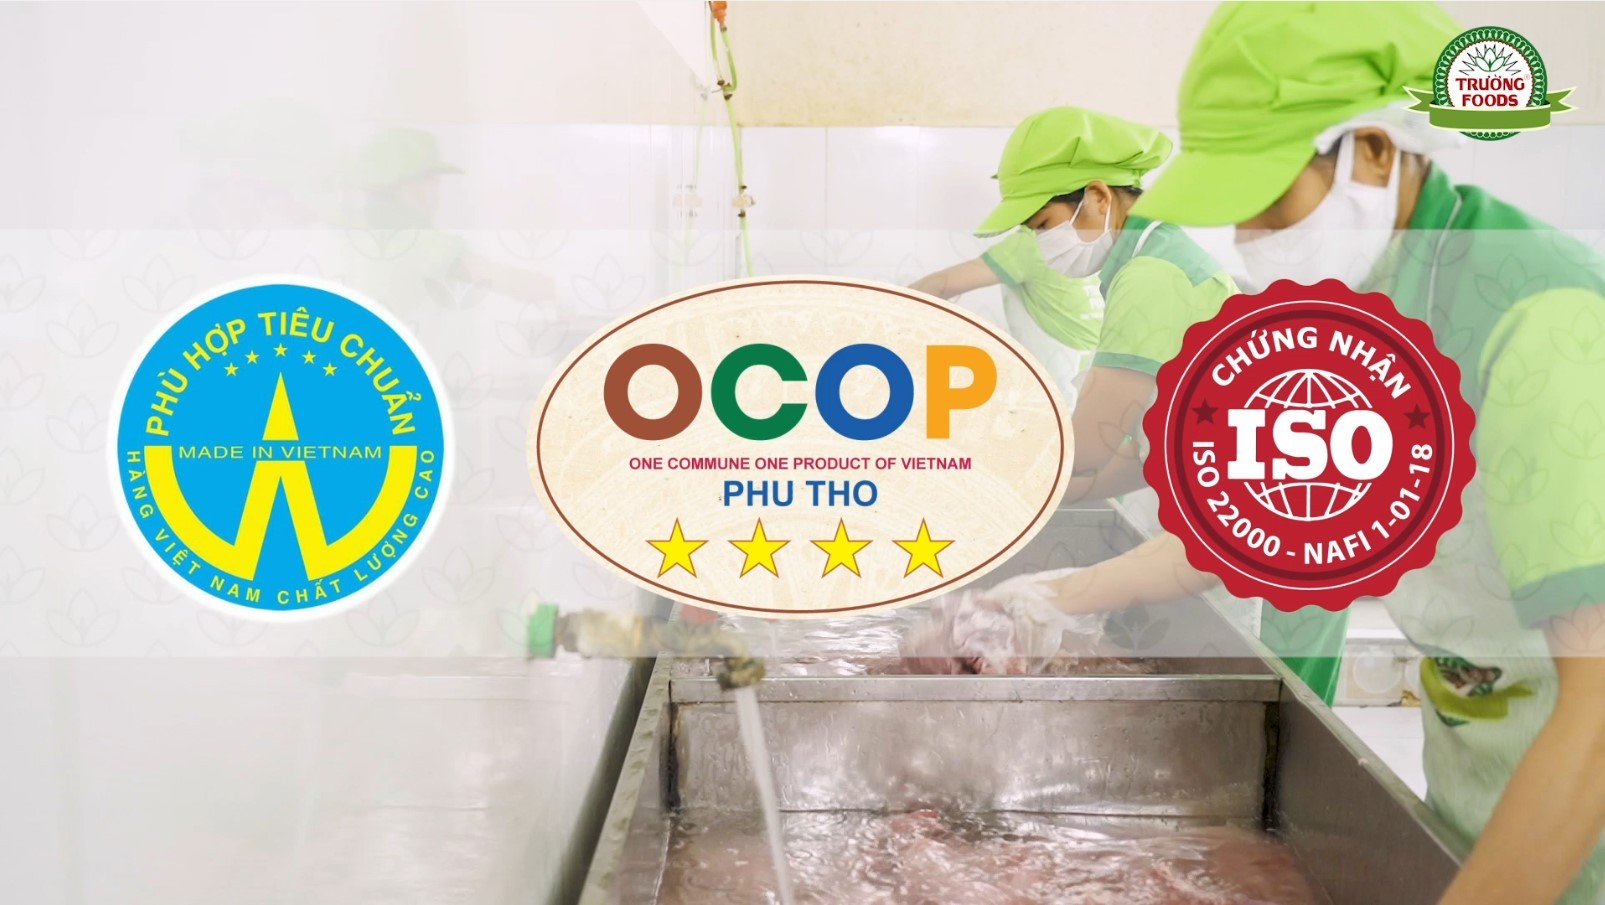 Trường Foods, OCOP và niềm tự hào người dân Thanh Sơn